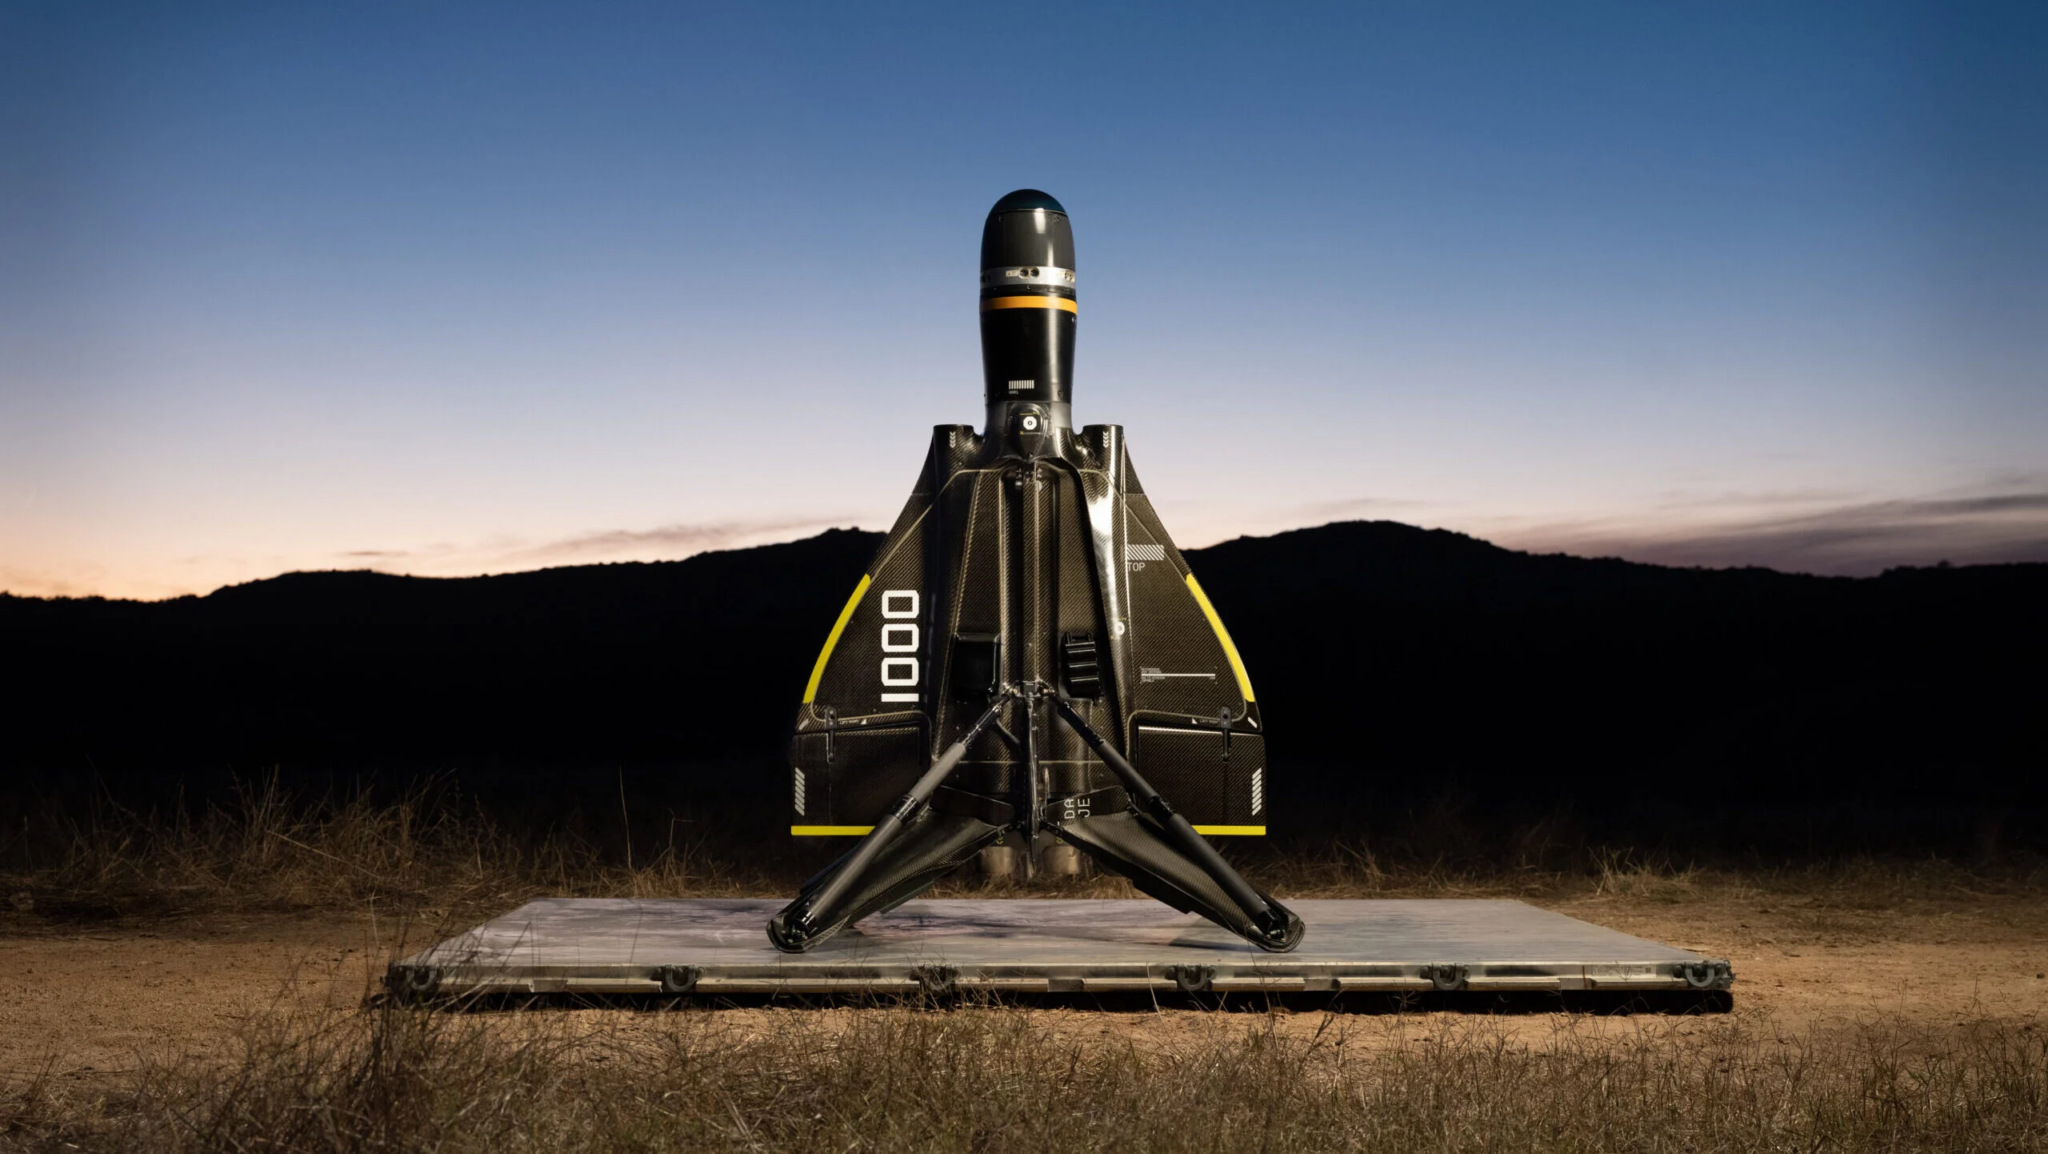 Anduril Roadrunner er verdens første genanvendelige ubemandede interceptor, der kan lande som SpaceX's Falcon 9-raket.